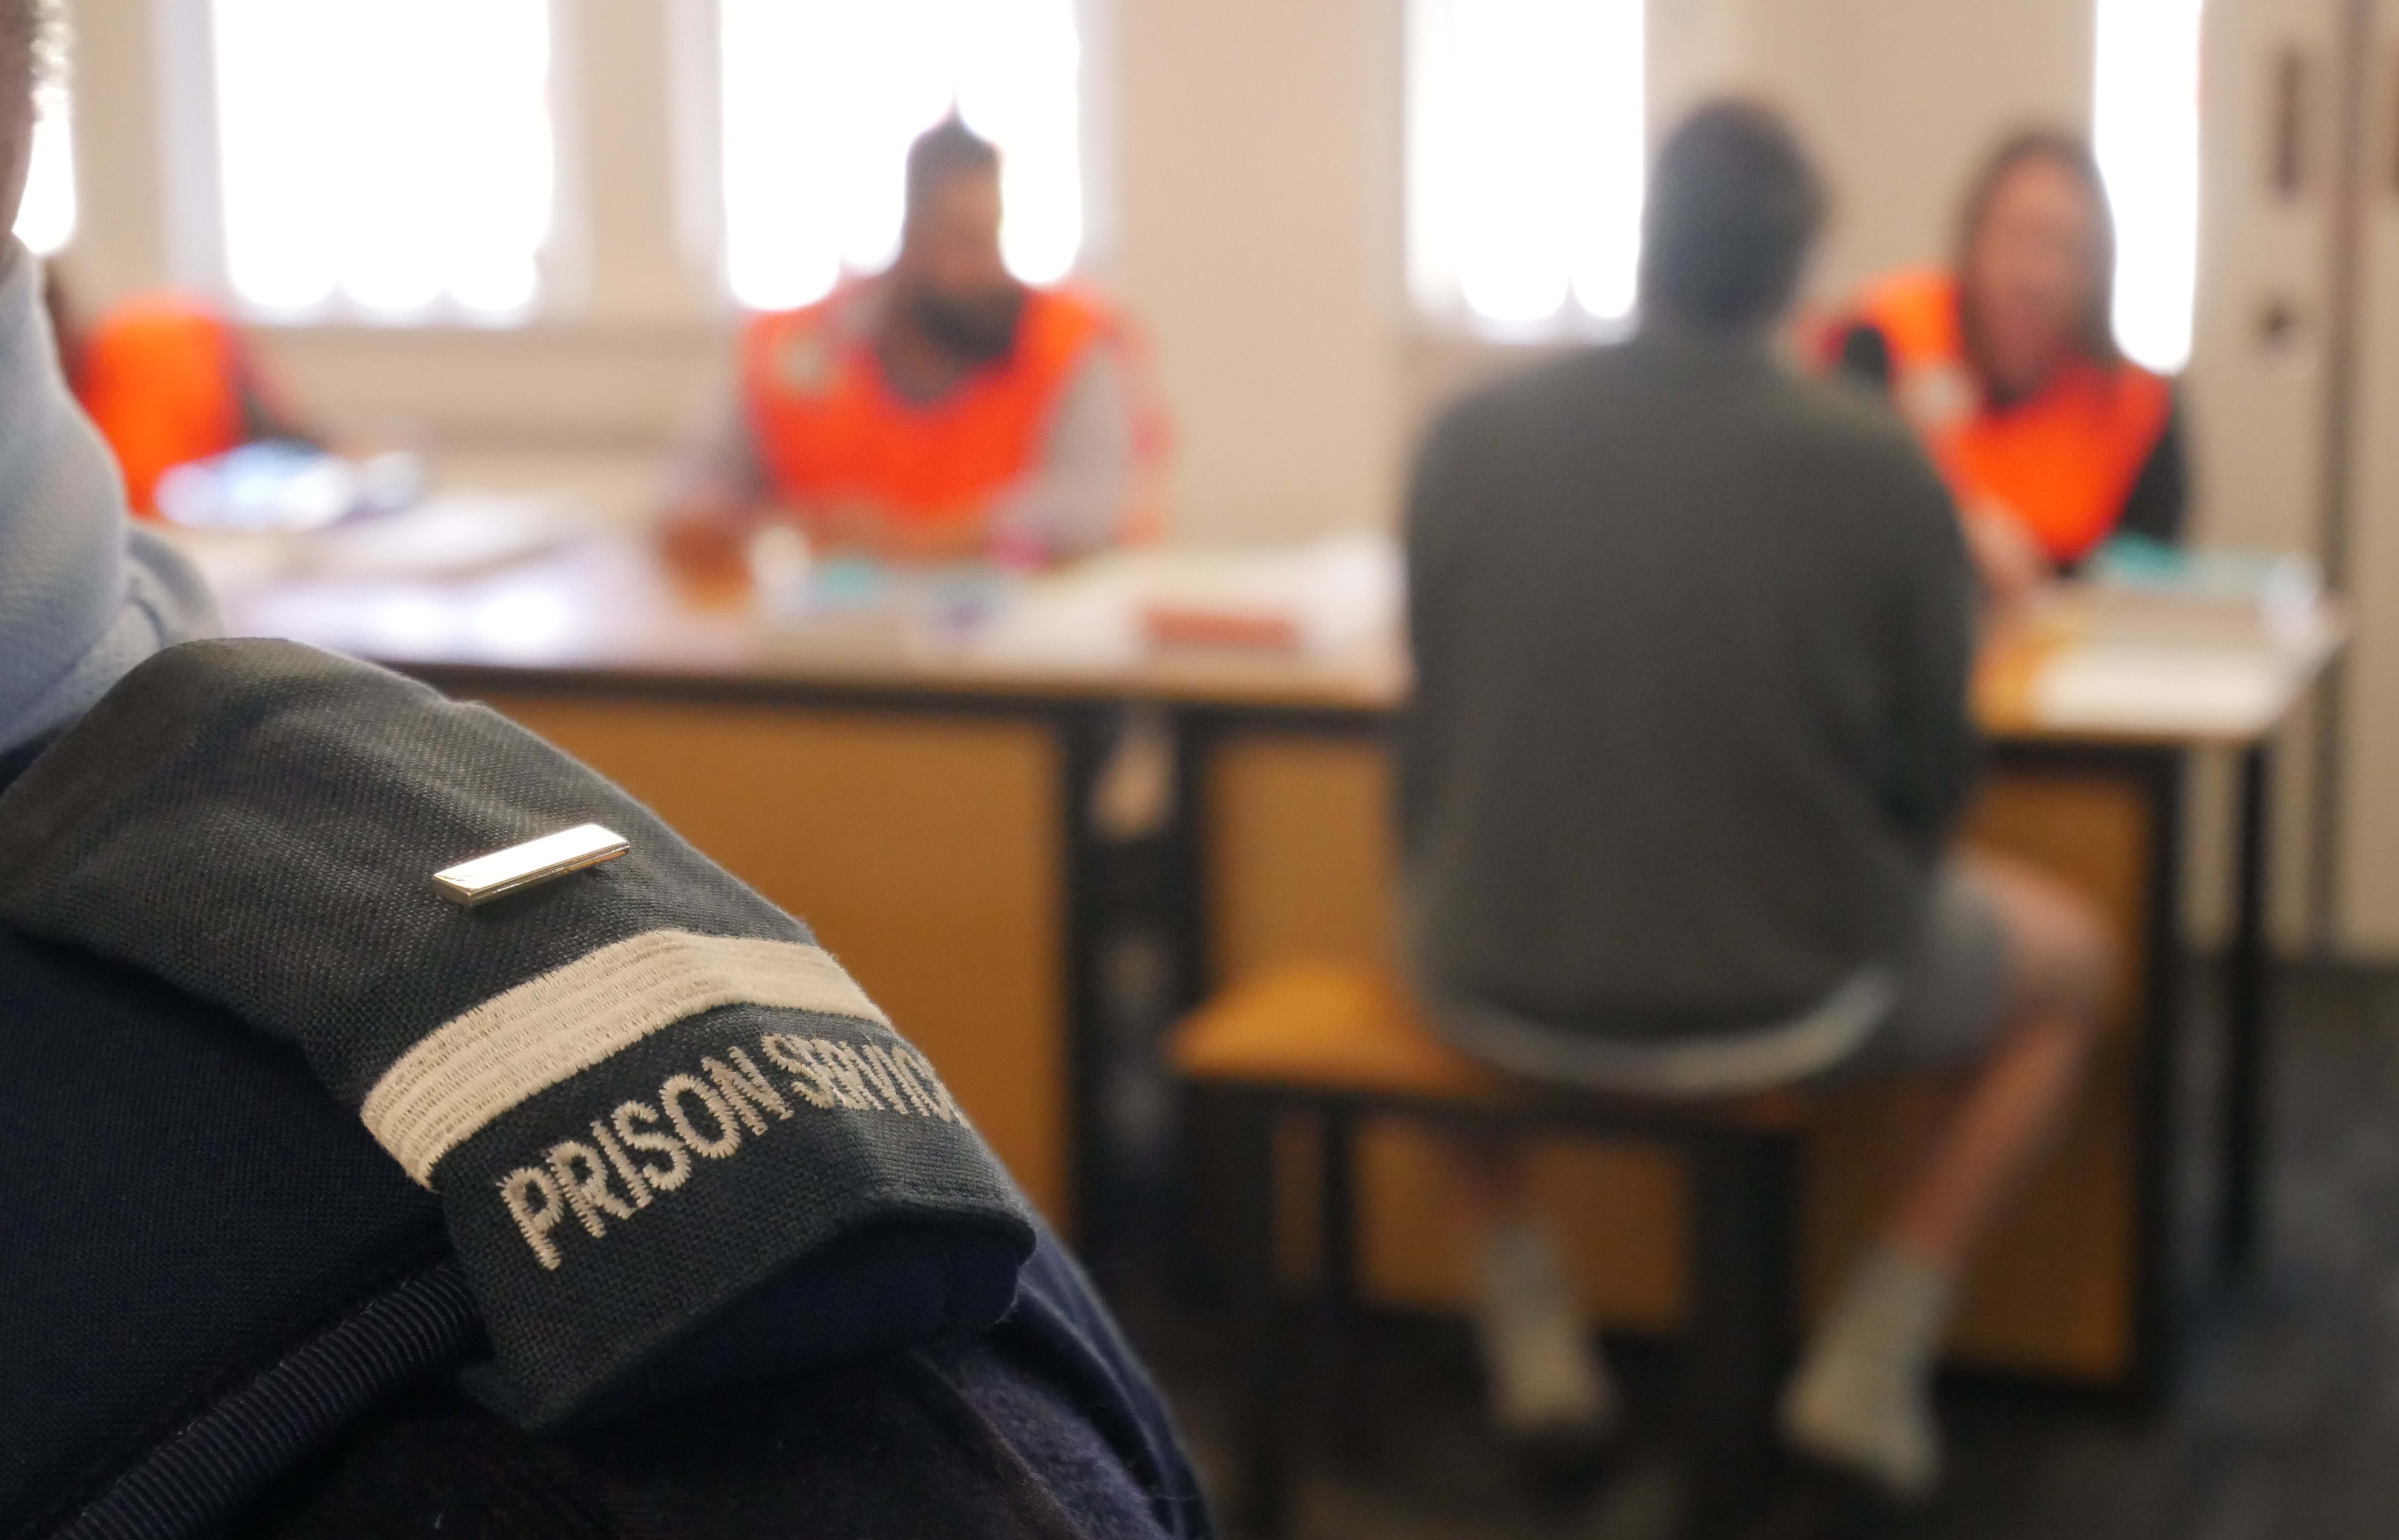 Voting underway at Christchurch Men's Prison.